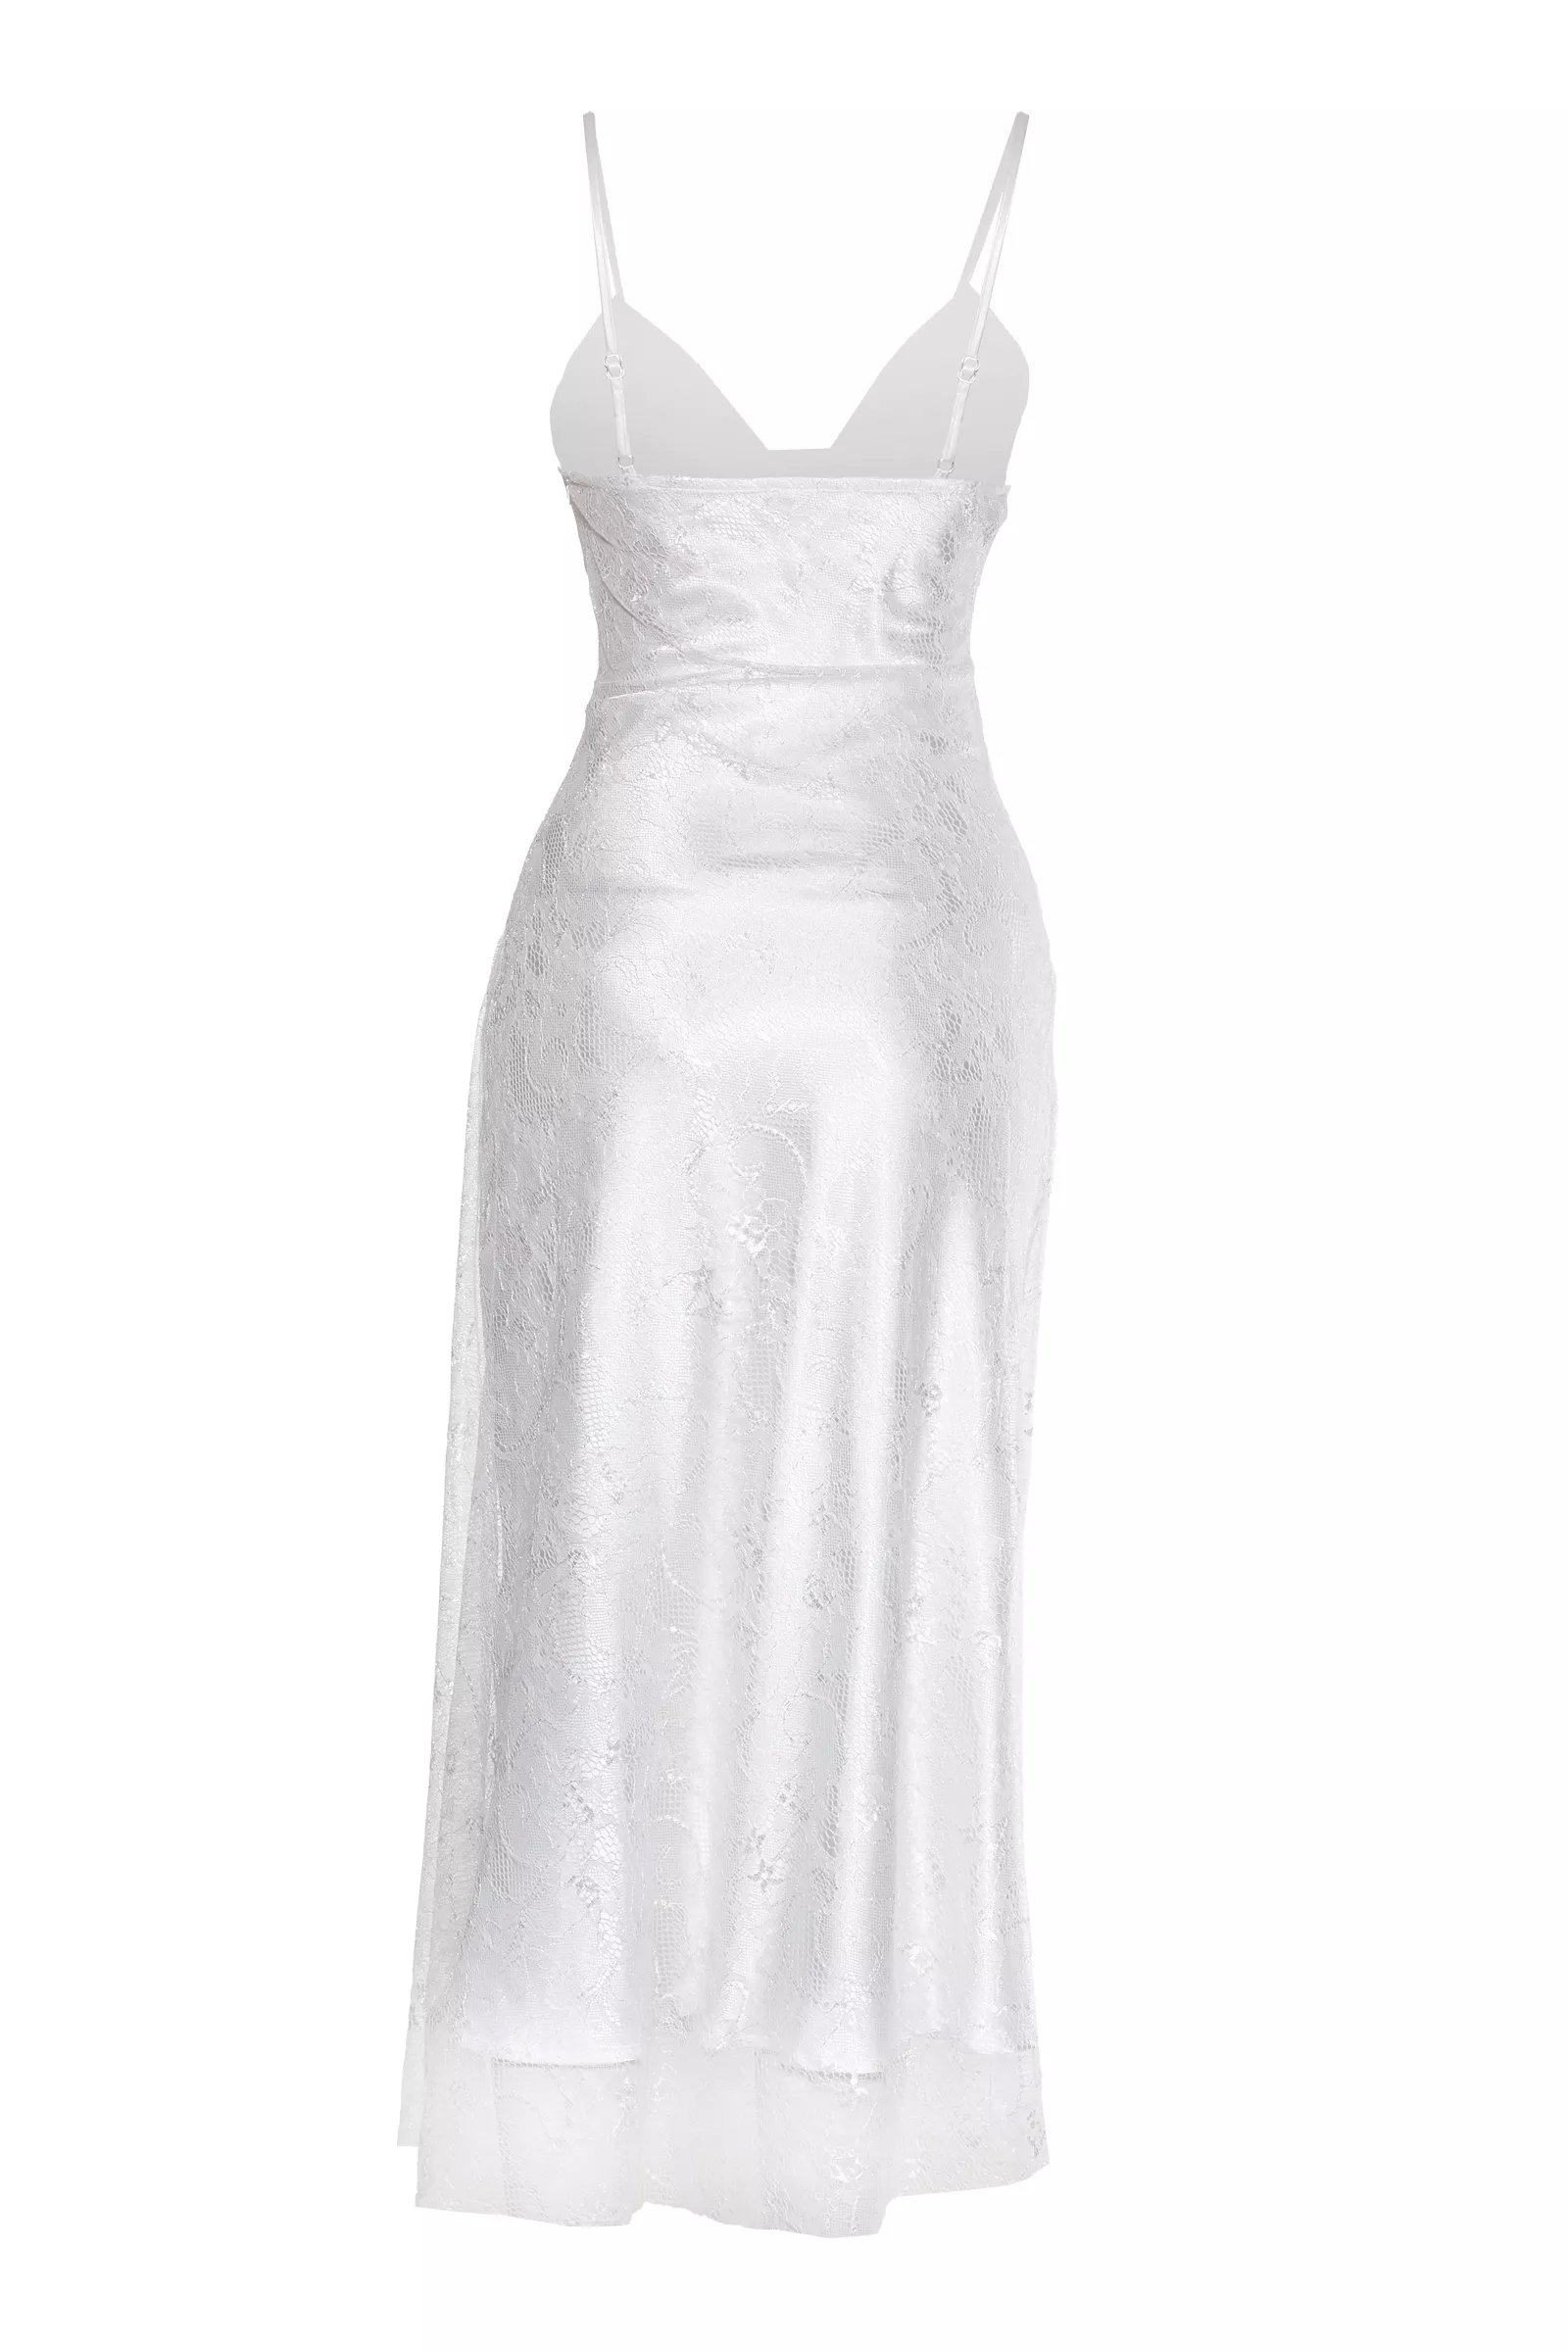 Beyaz dantel kolsuz orta boy elbise